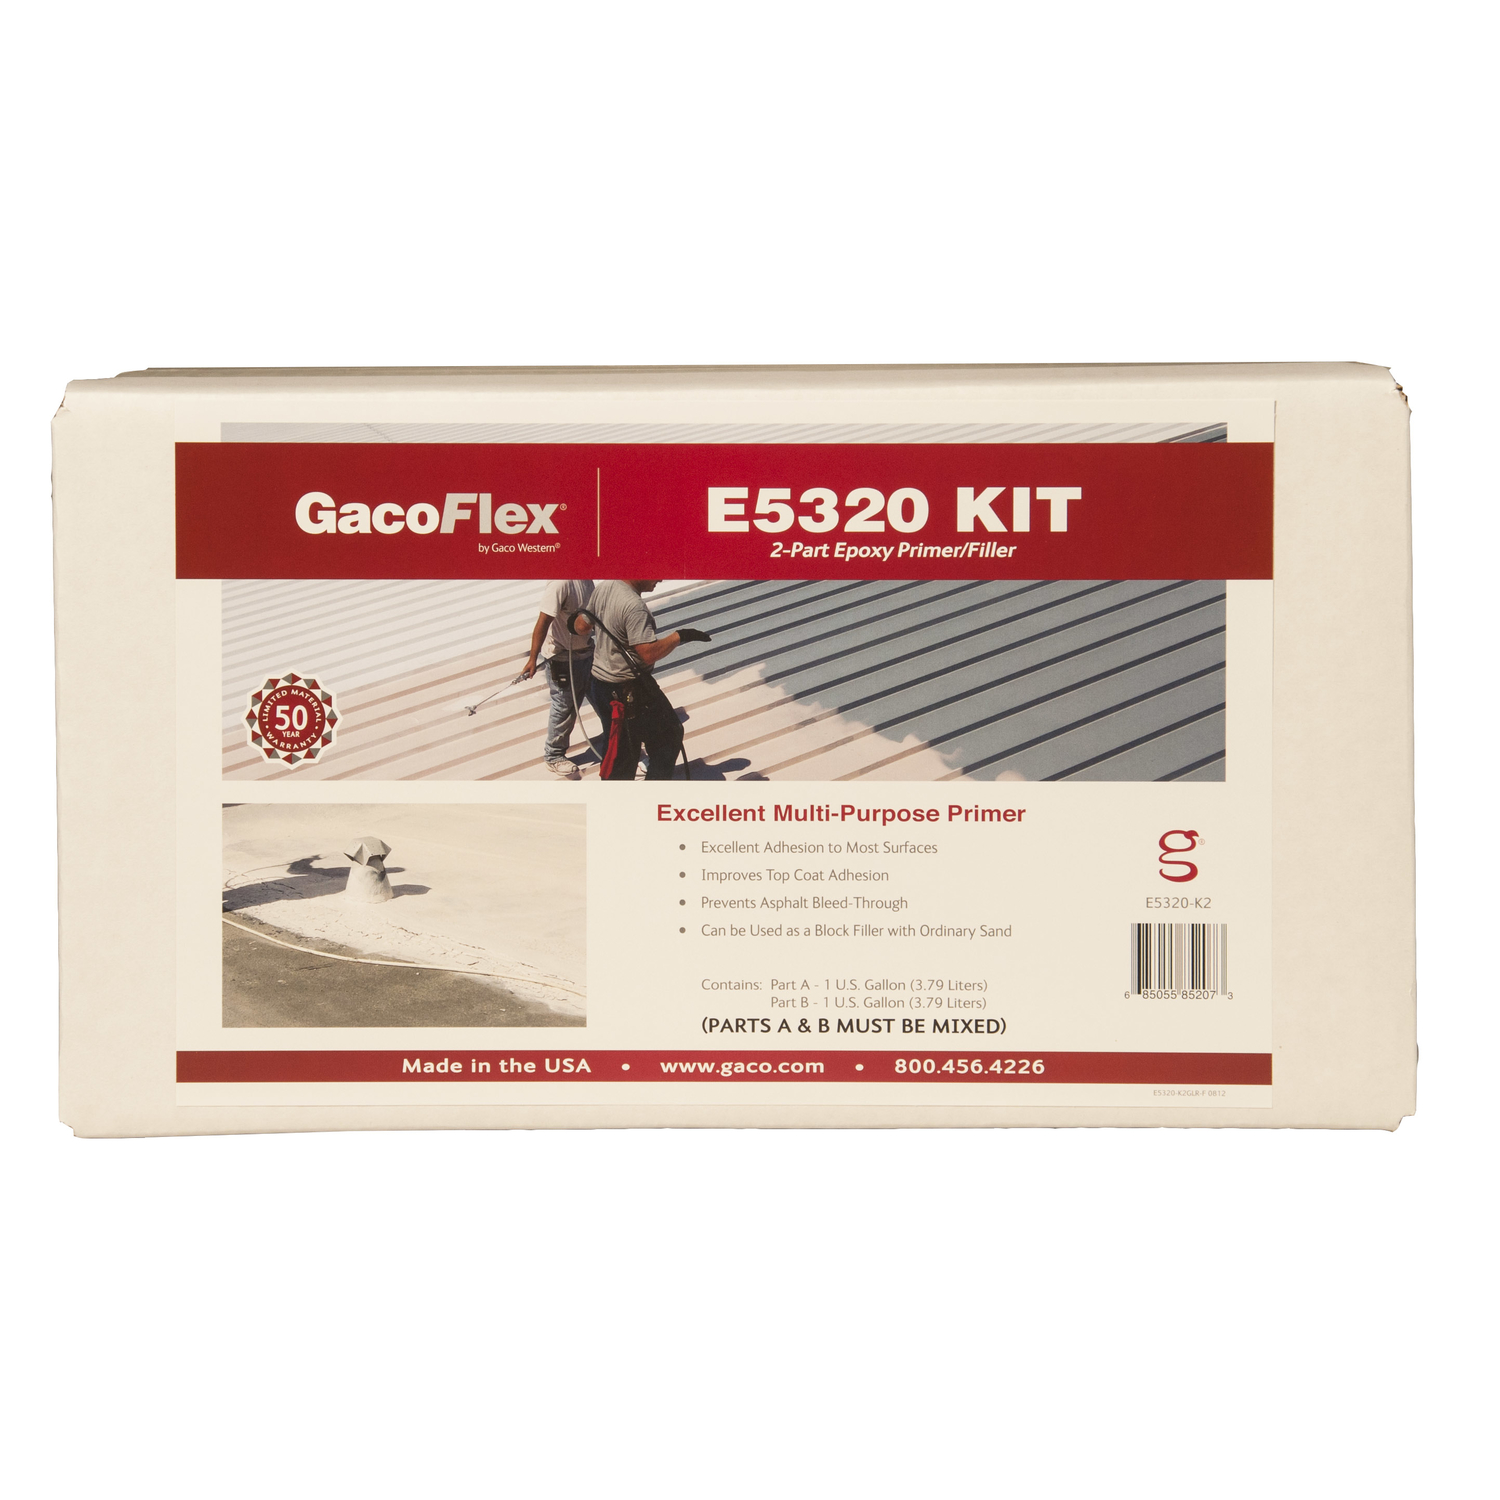 GacoFlex GCE5320KIT